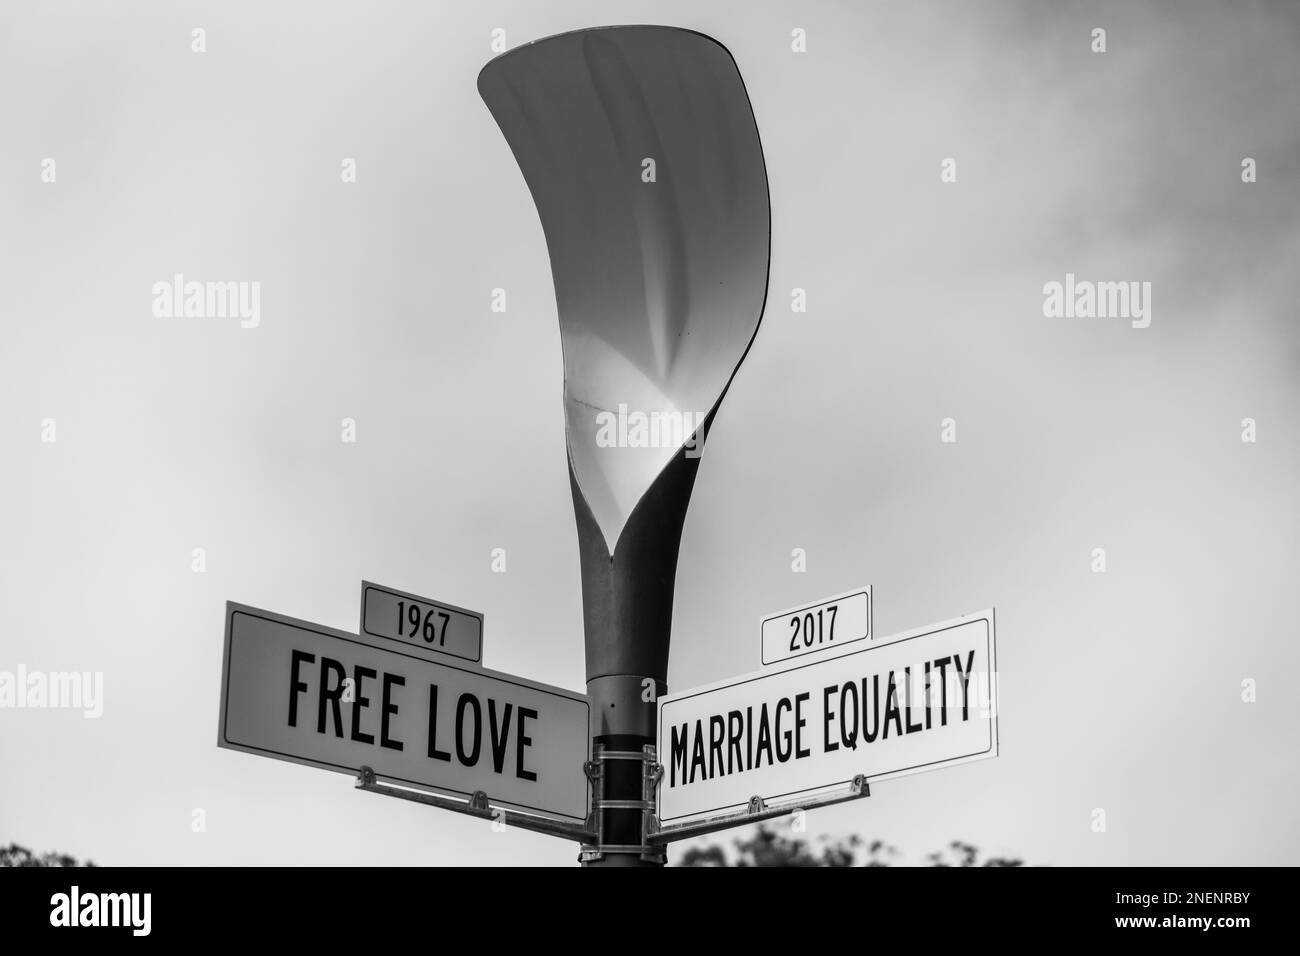 Une échelle de gris des signes de rue de l'amour libre en 1967 et de l'égalité de mariage en 2017, avant et après concept Banque D'Images